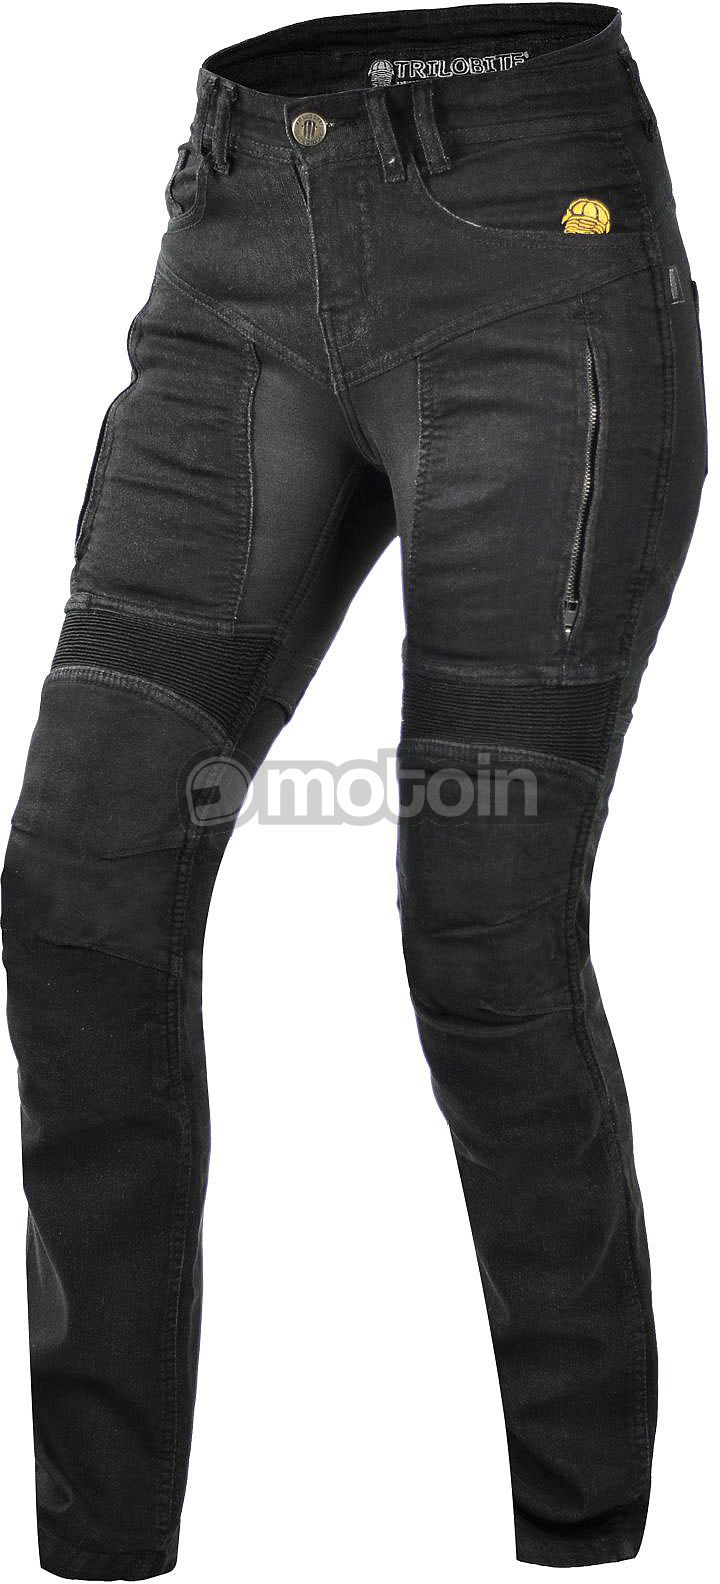 Trilobite Parado Slim-Fit, jeans vrouwen